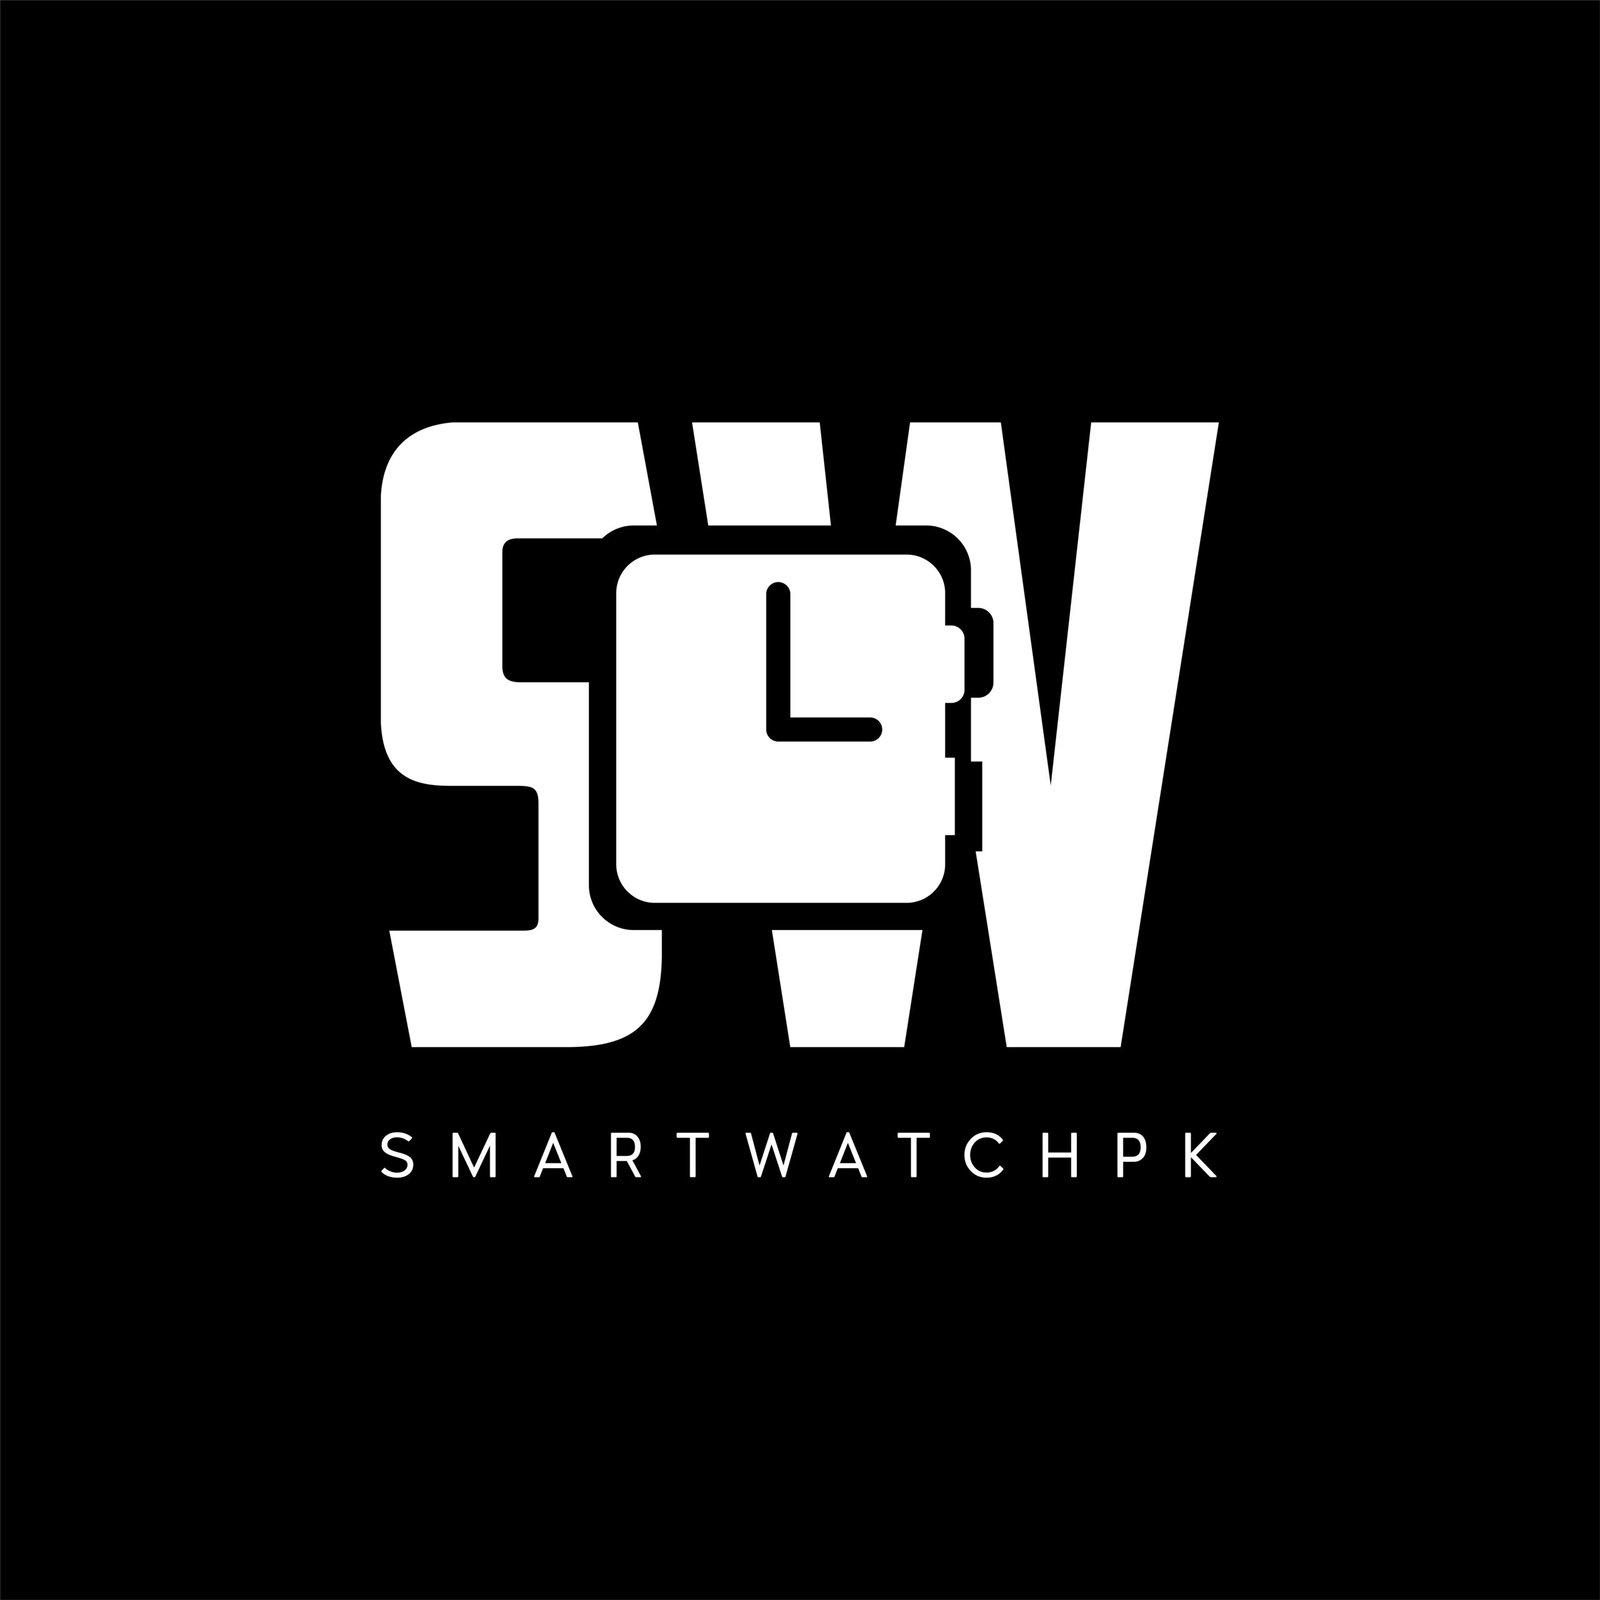 smartwatchpk.com